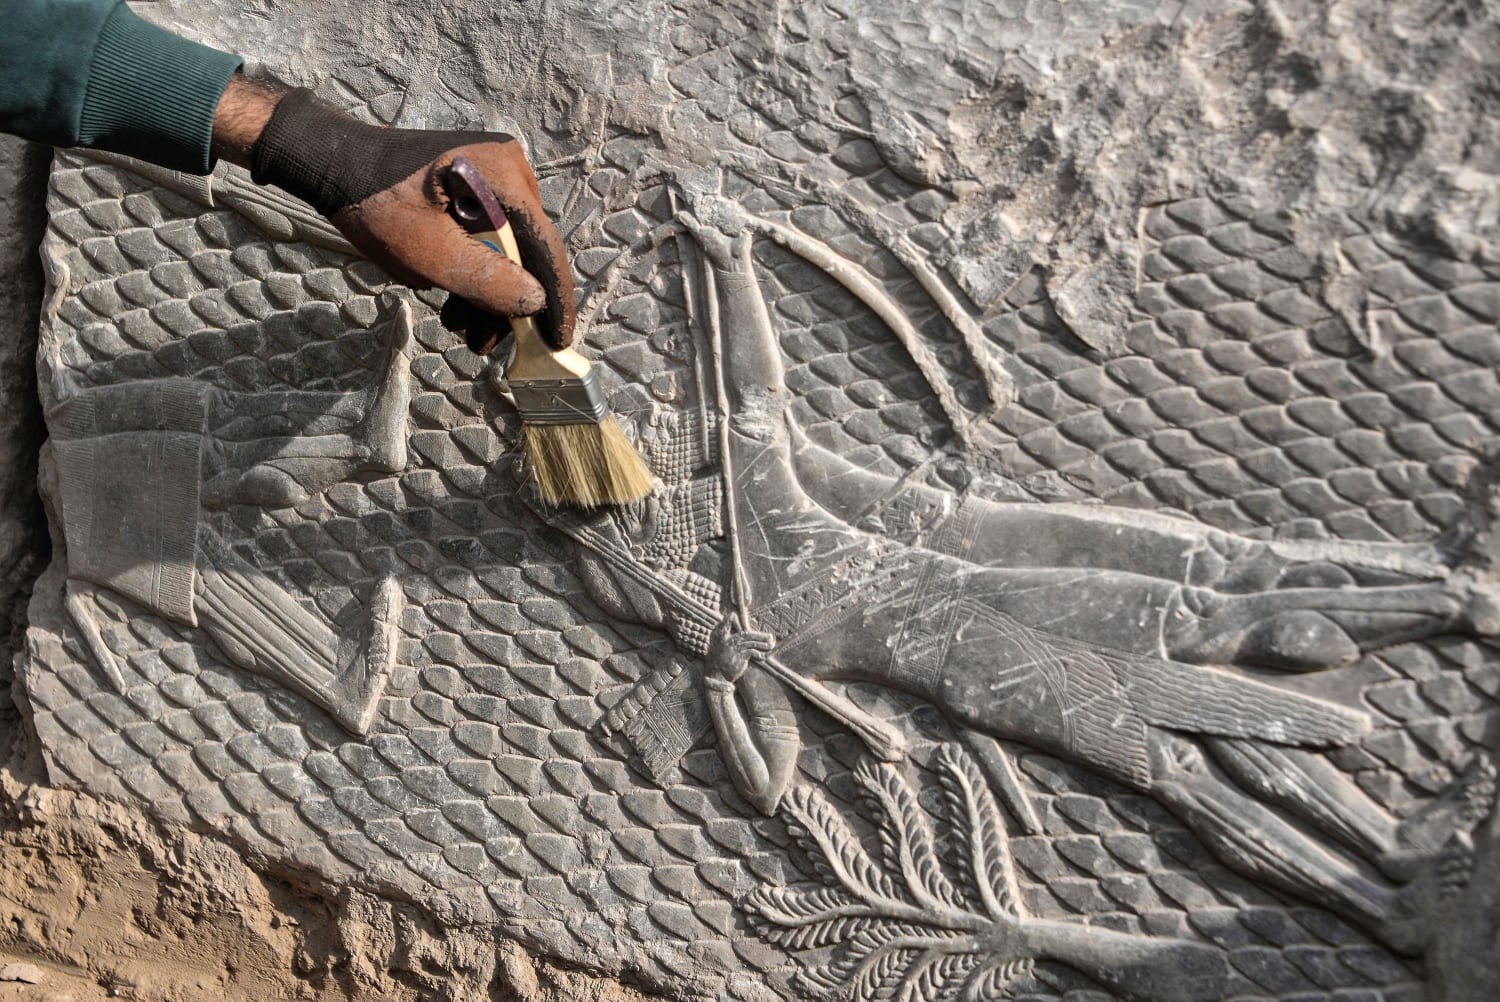 Ιράκ: Στο φως αρχαιολογικοί θησαυροί που θάφτηκαν στα ερείπια που άφησε το Ισλαμικό Κράτος